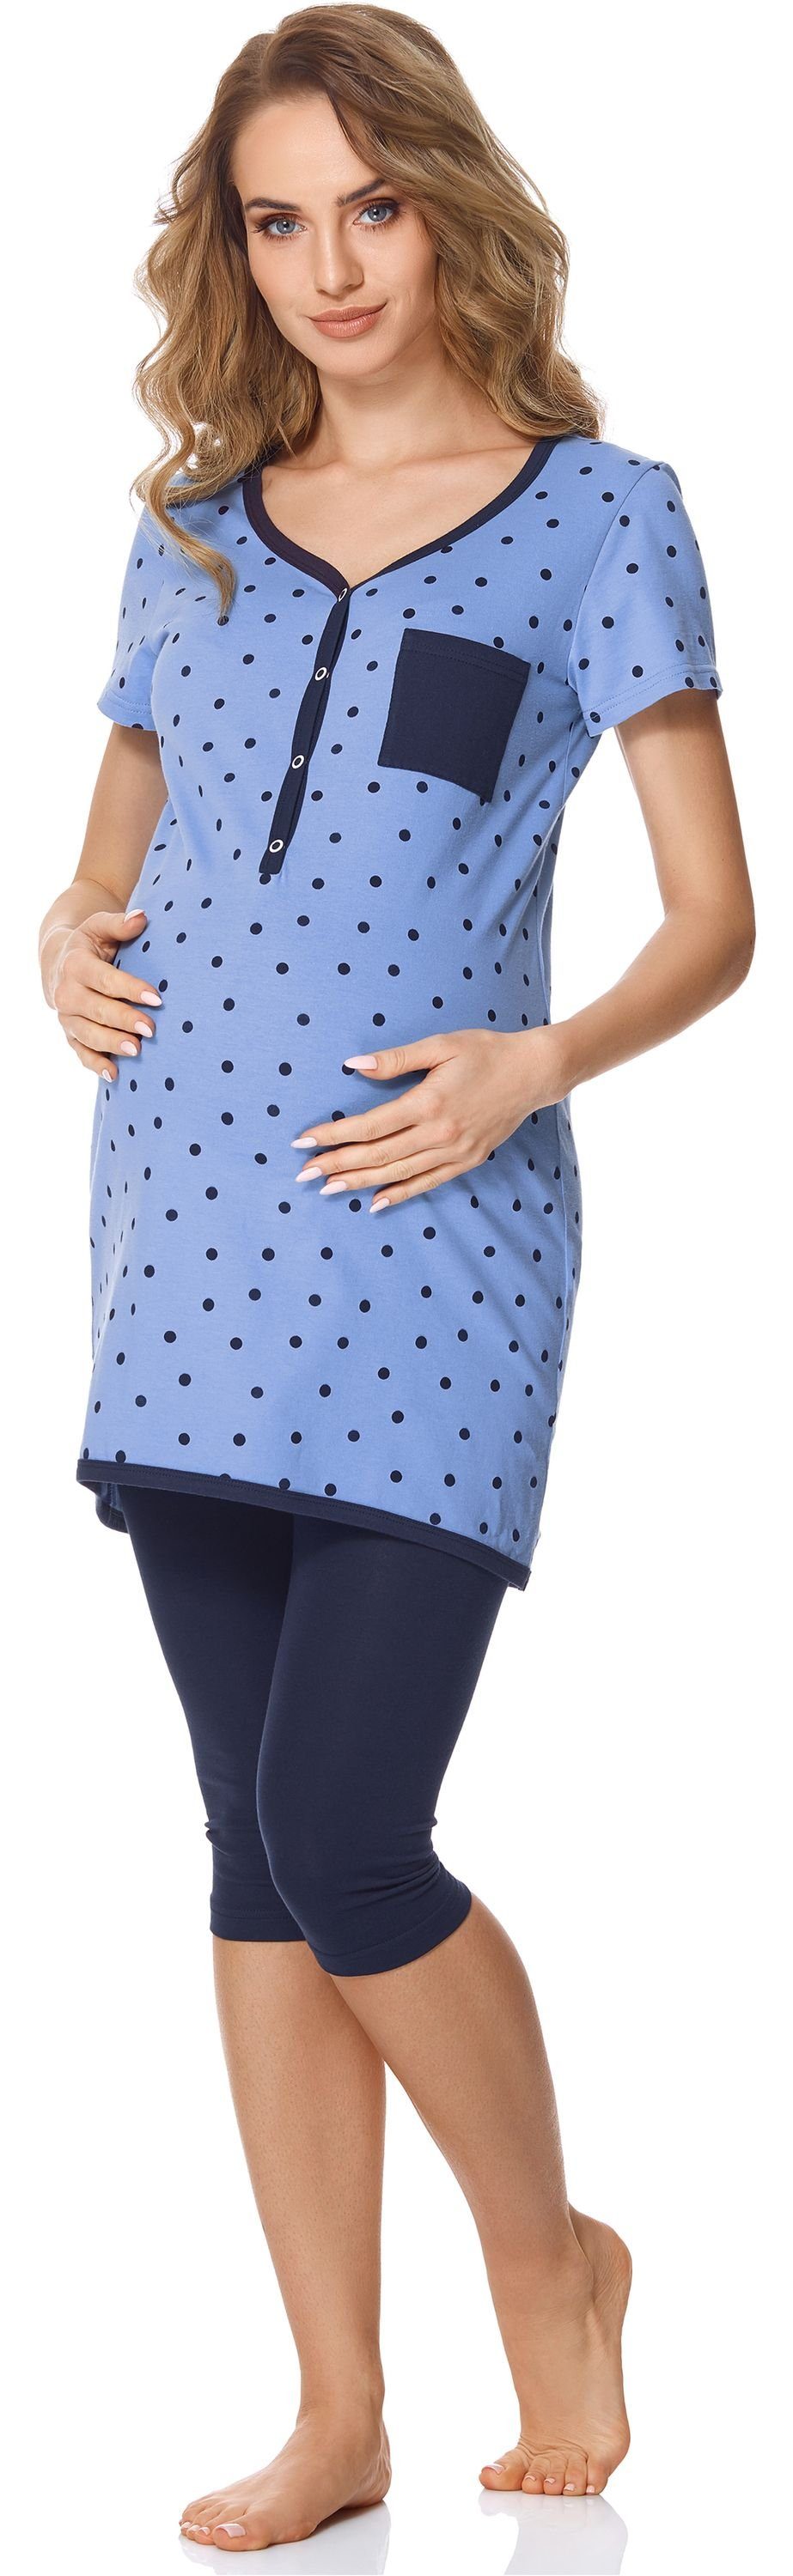 Bellivalini Umstandspyjama Damen Umstands Pyjama Punkte/Marineblau Stillfunktion mit BLV50-126 mit Brusttasche Blau